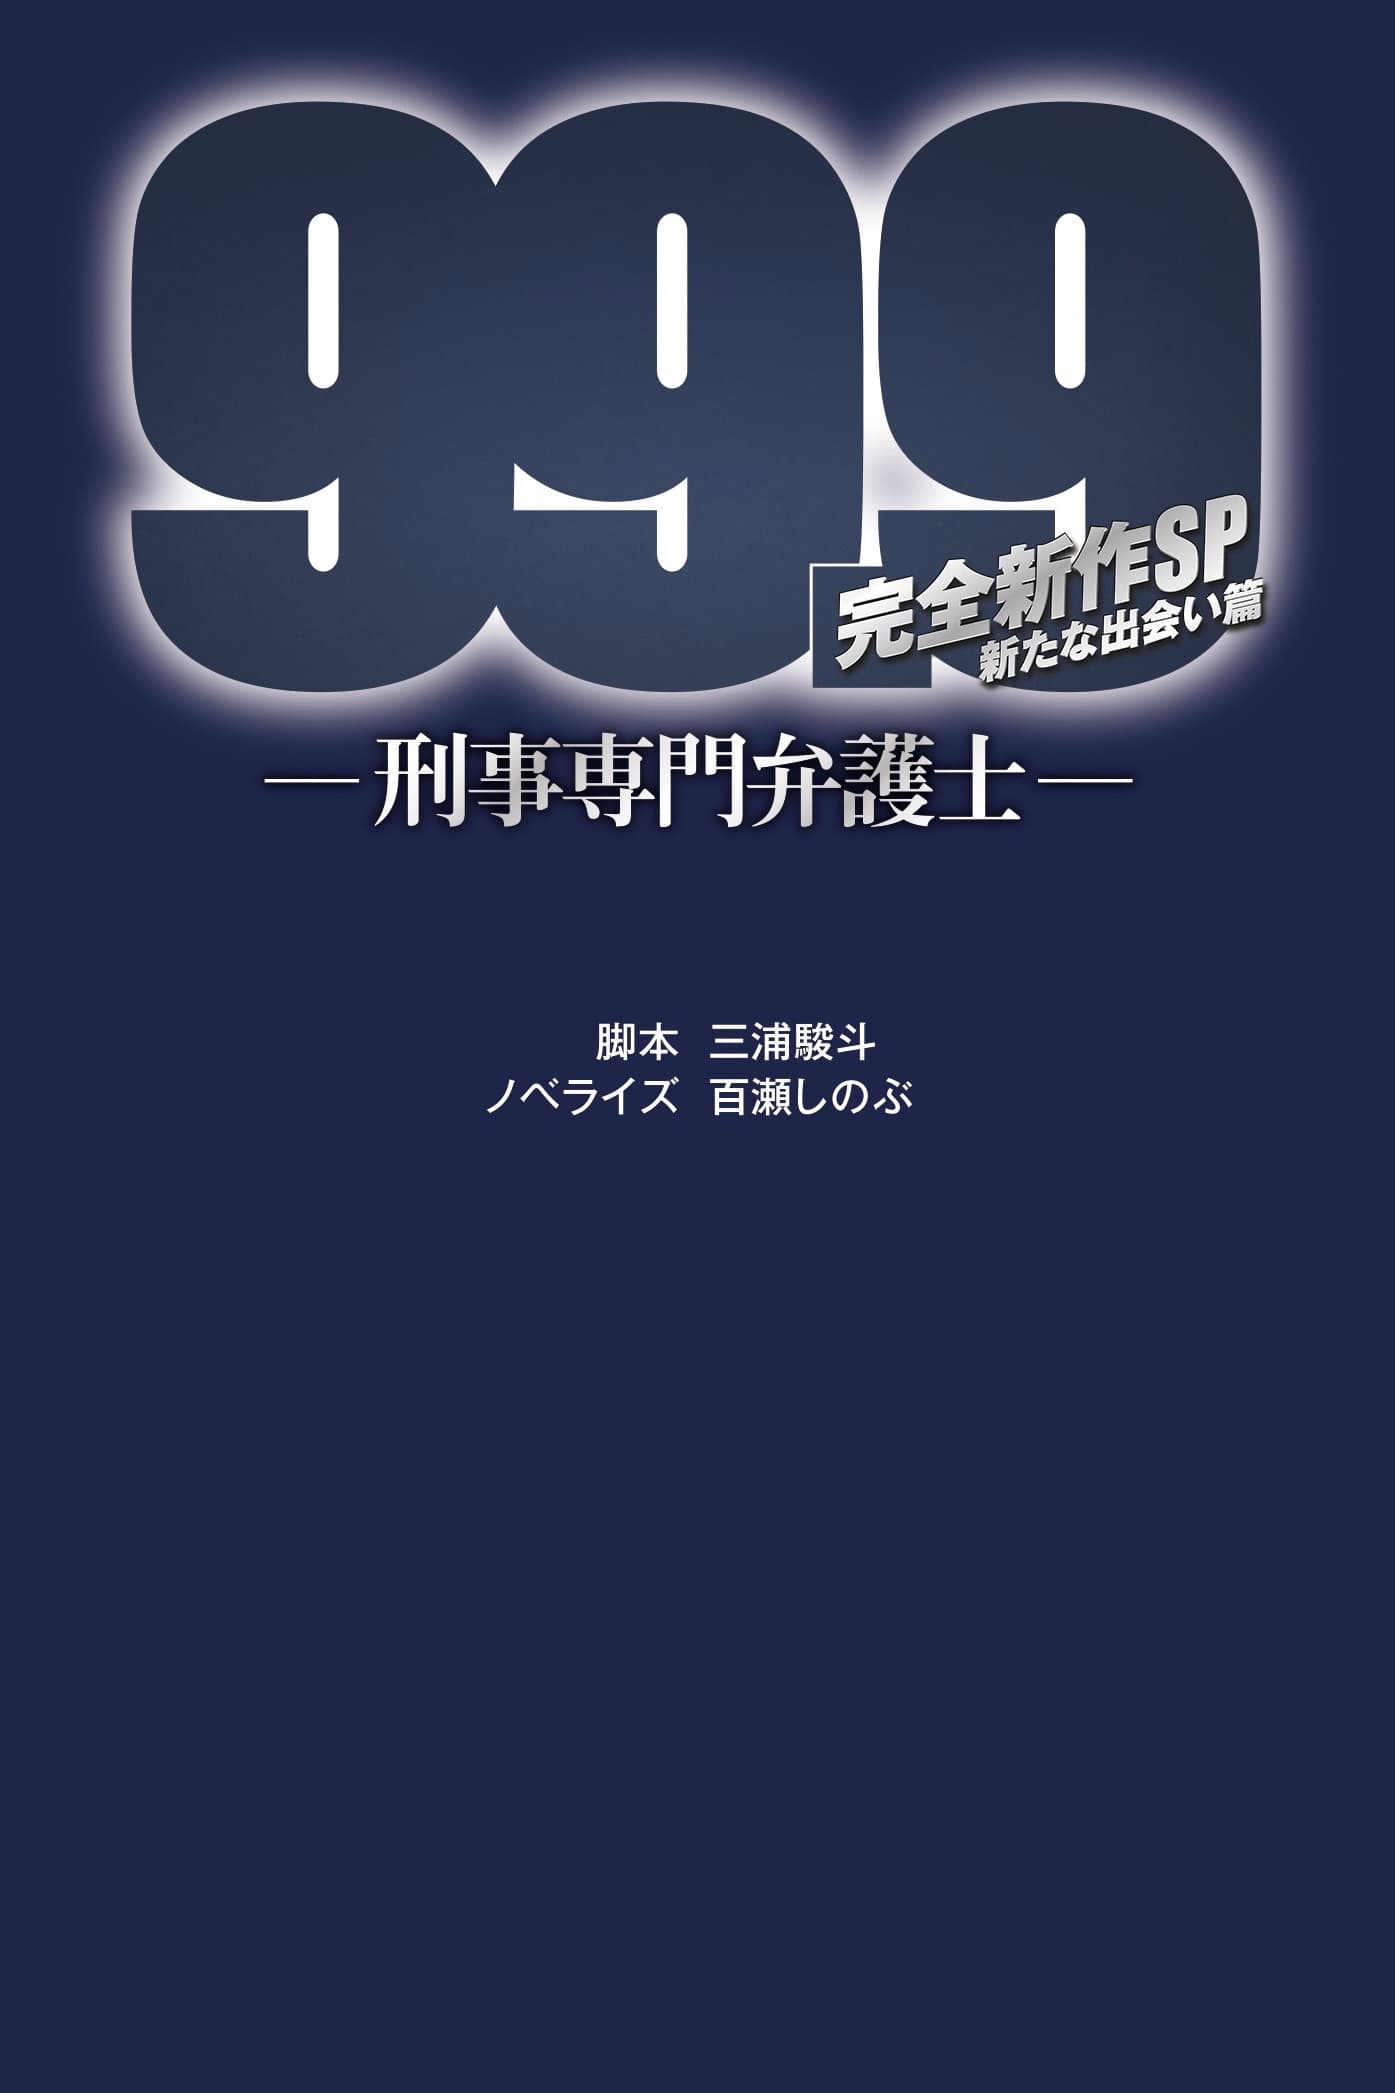 99.9-刑事専門弁護士- 完全新作SP新たな出会い篇～映画公開前夜祭～の画像